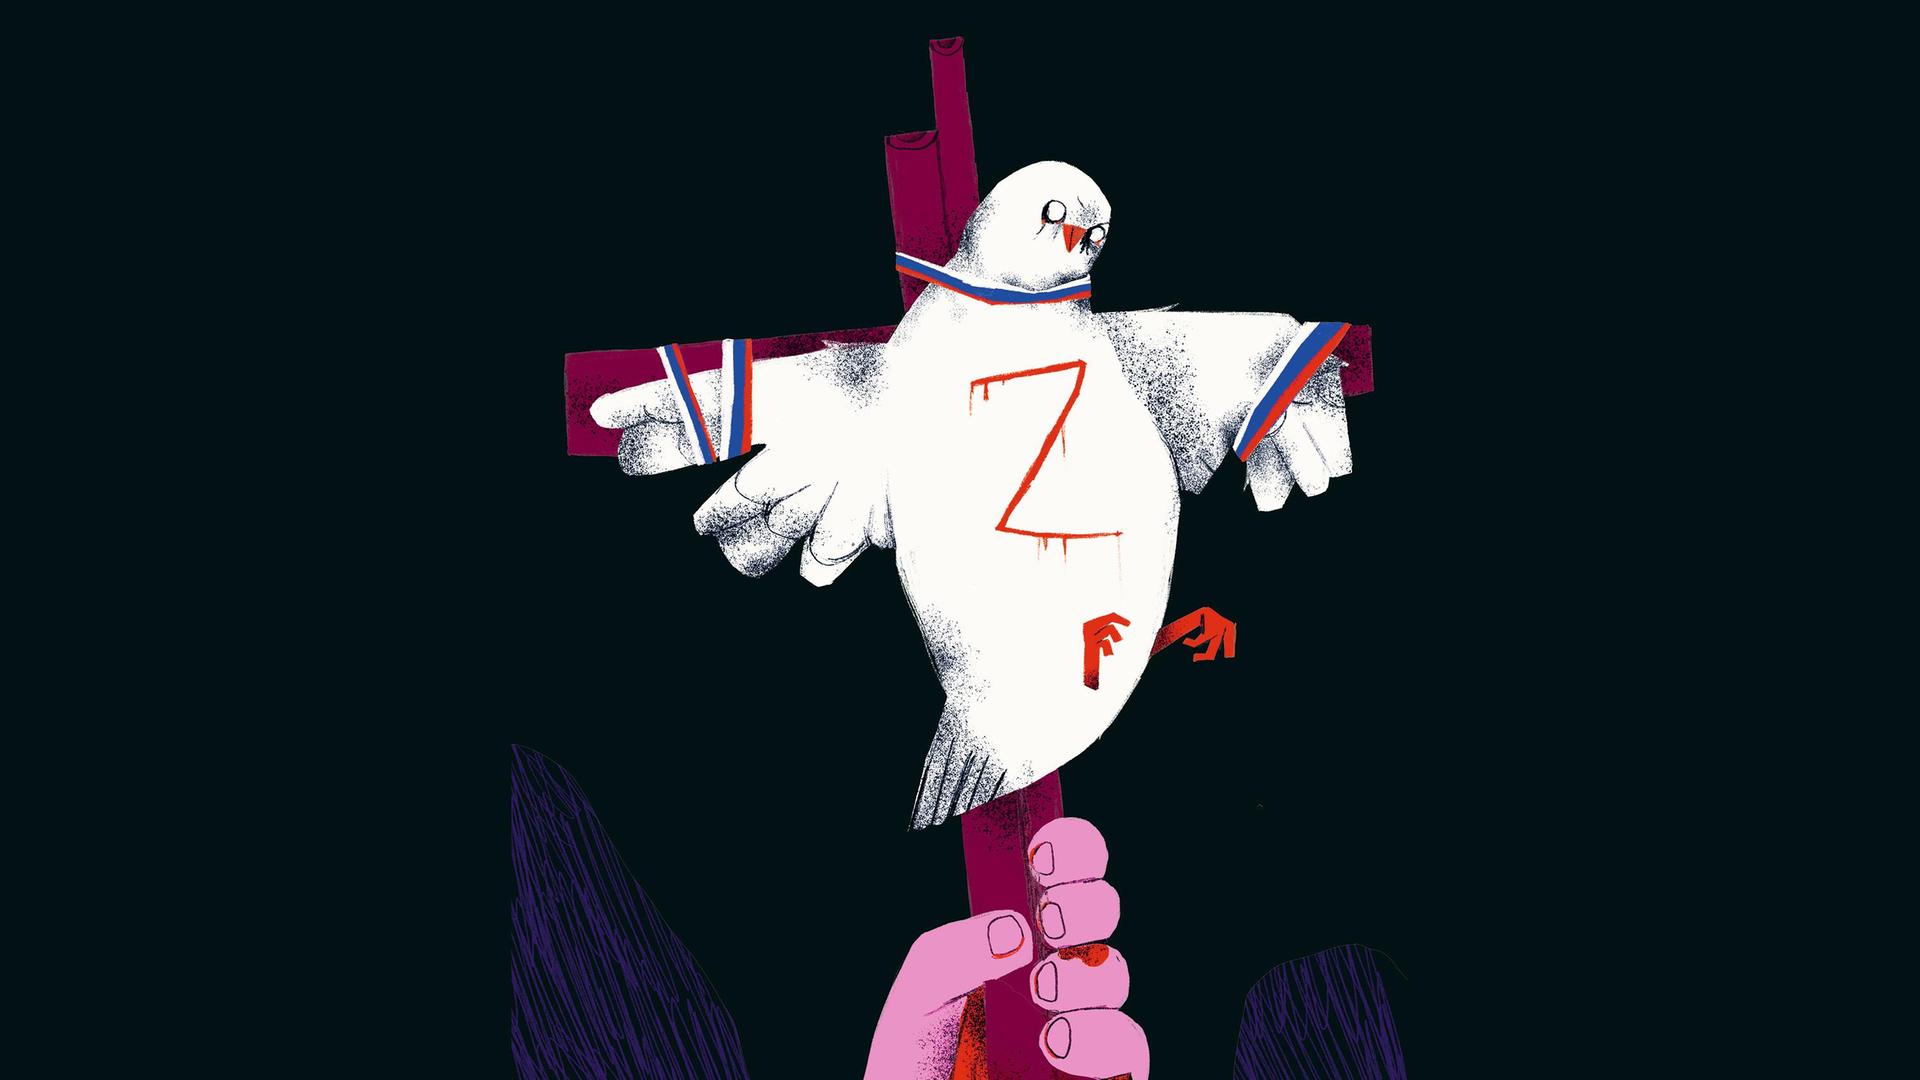 Eine Illustration zum Krieg in der Ukraine von Anya Sarwira. Es zeigt eine weiße Taube mit dem Z-Symbol an einem Kreuz.